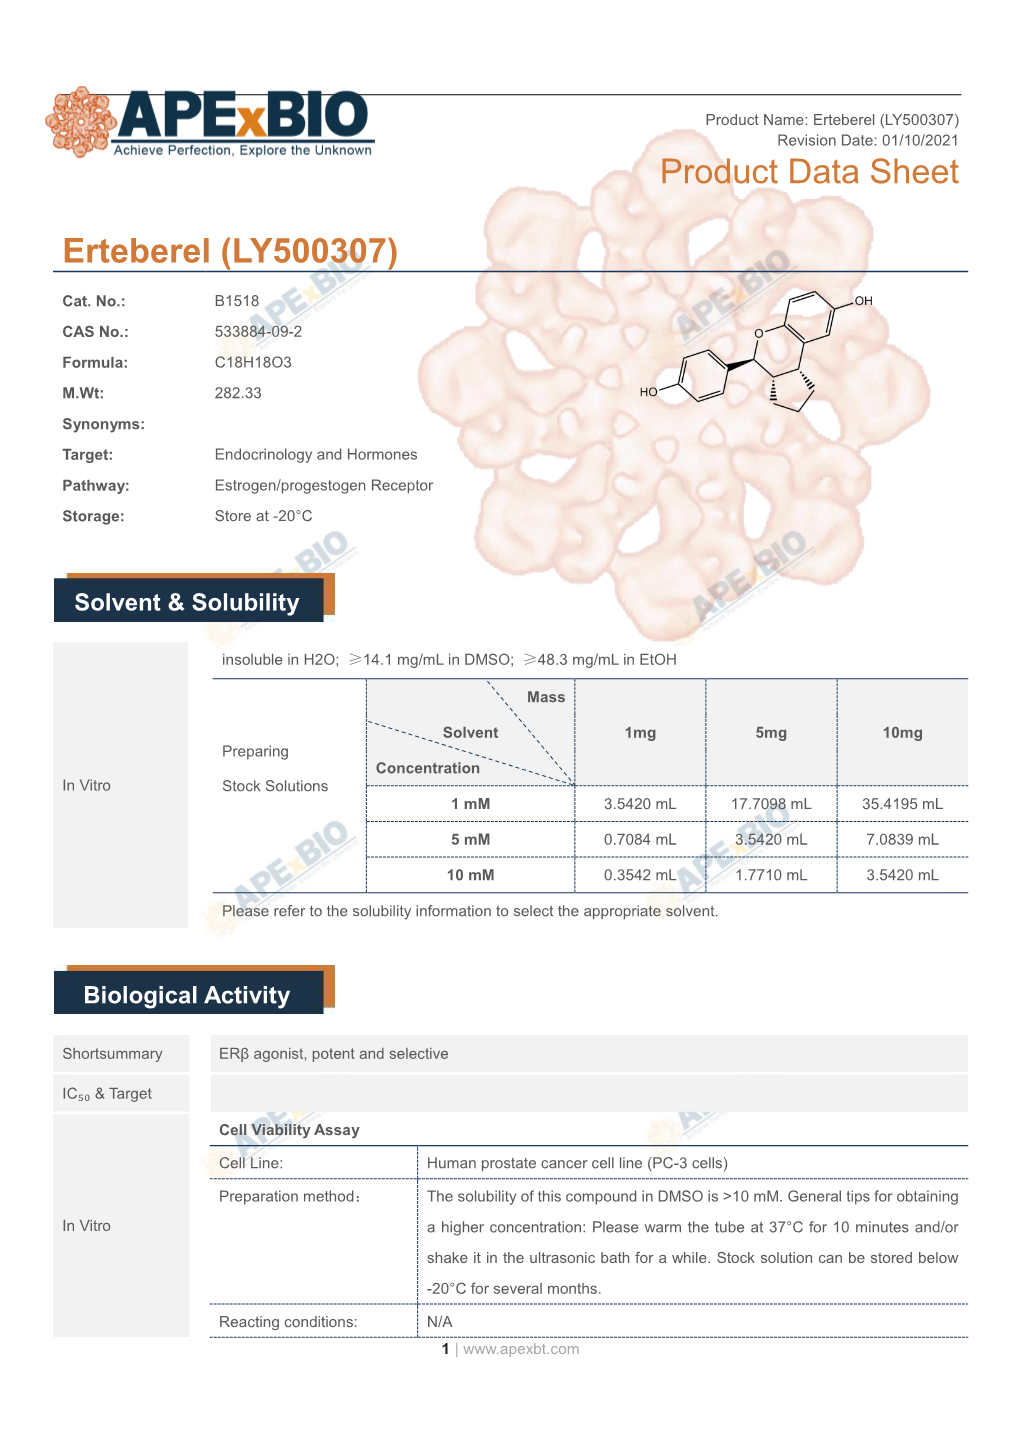 Erteberel (LY500307) Product Data Sheet